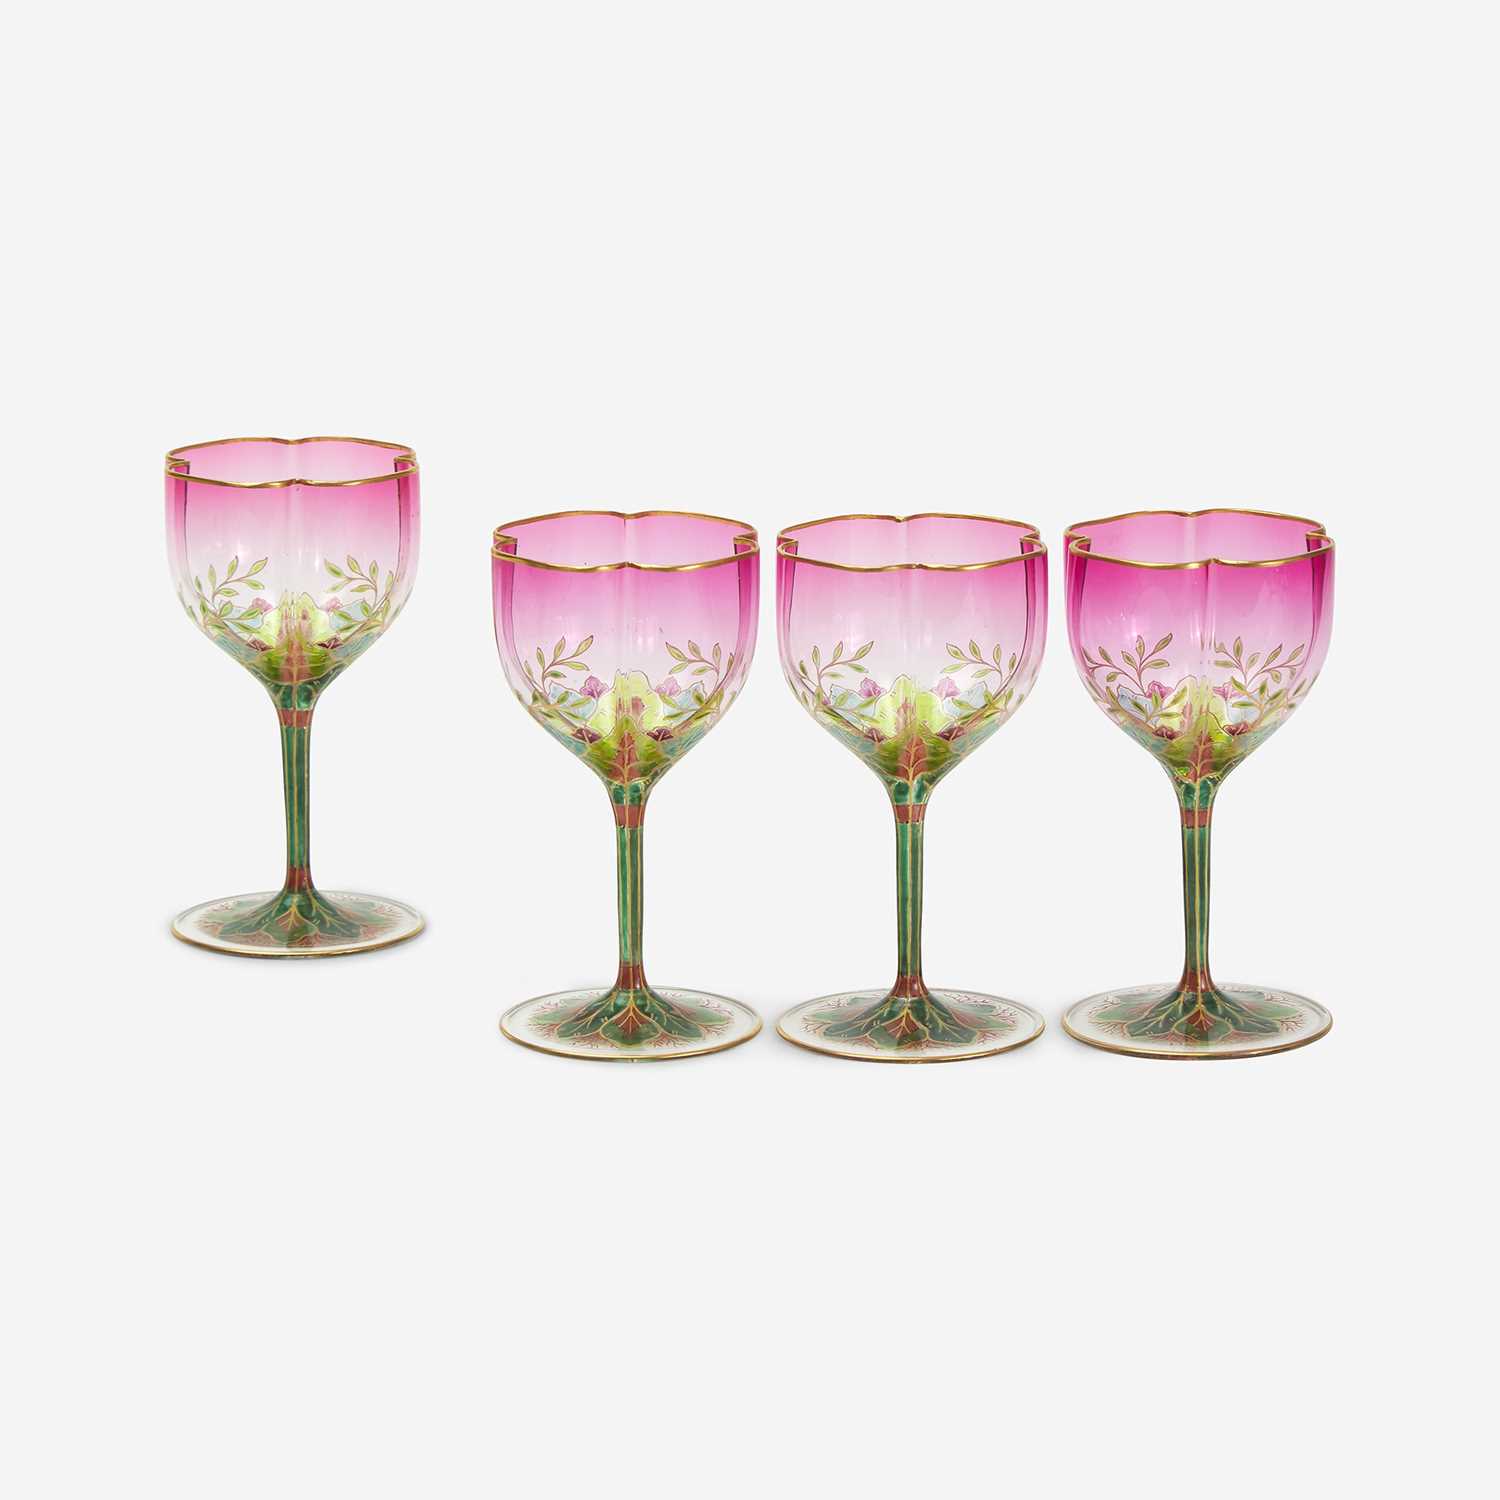 Lot 130 - A Set of Four Austrian Art Nouveau Enameled Glass Wine Glasses